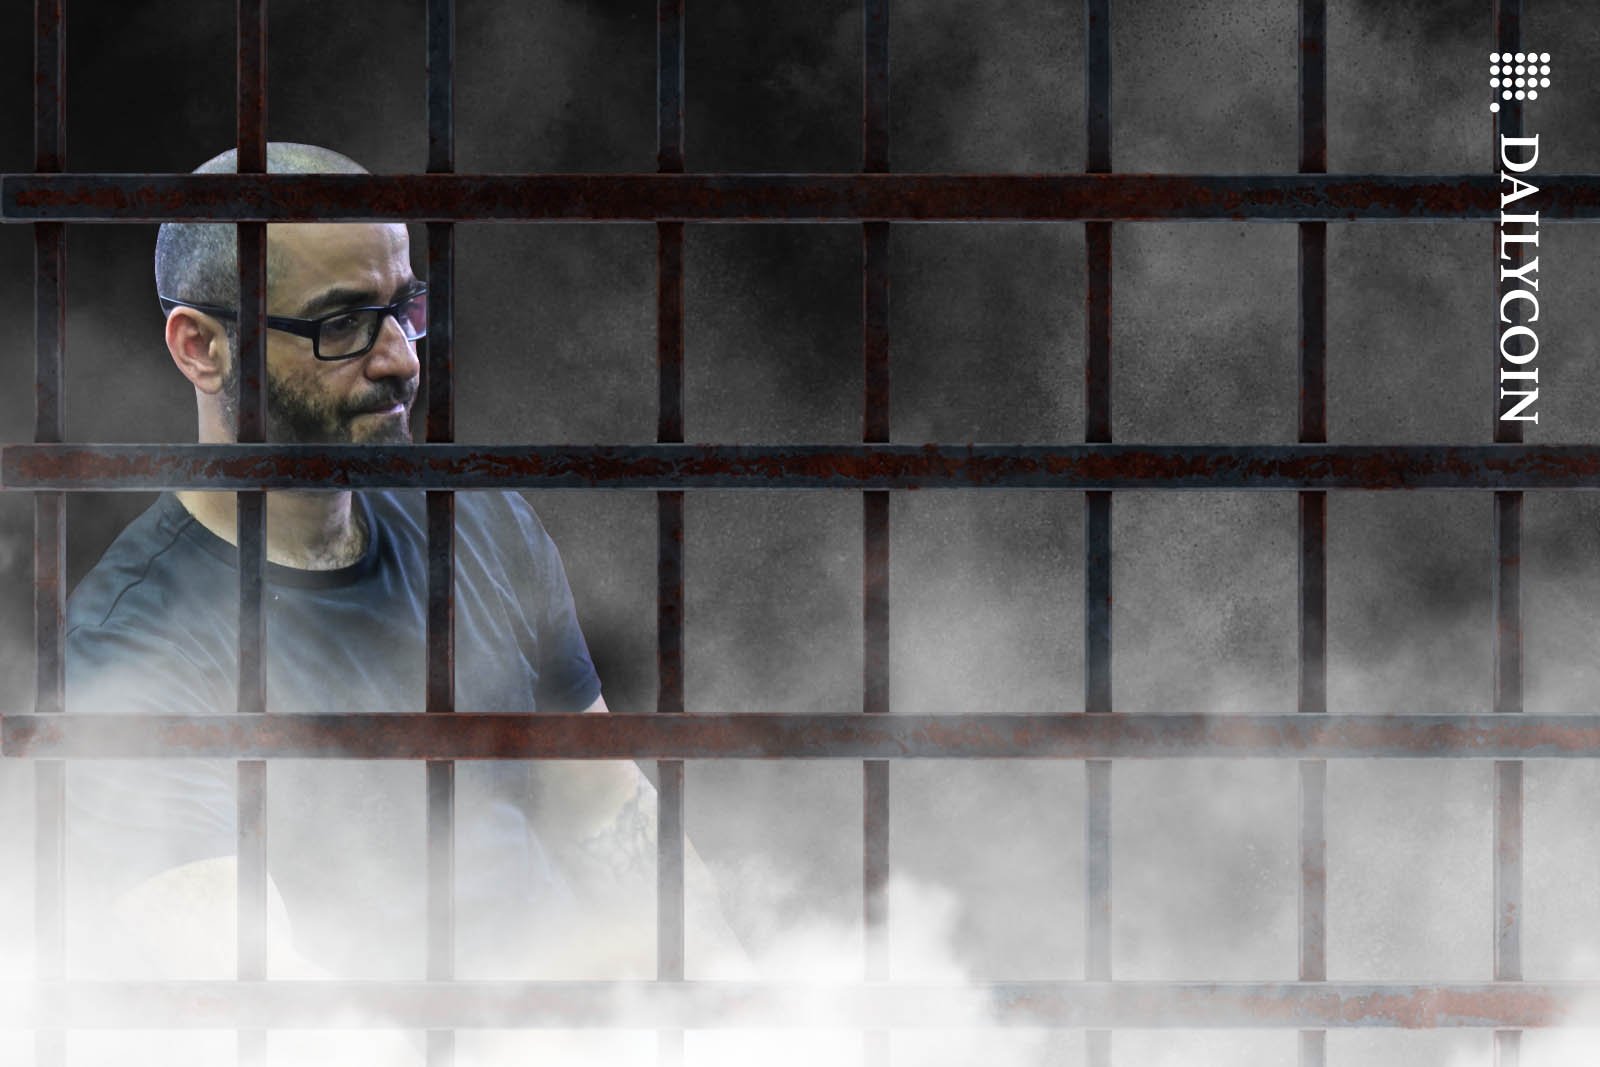 Tigran Gambaryan sitting in a smokey prison cell.